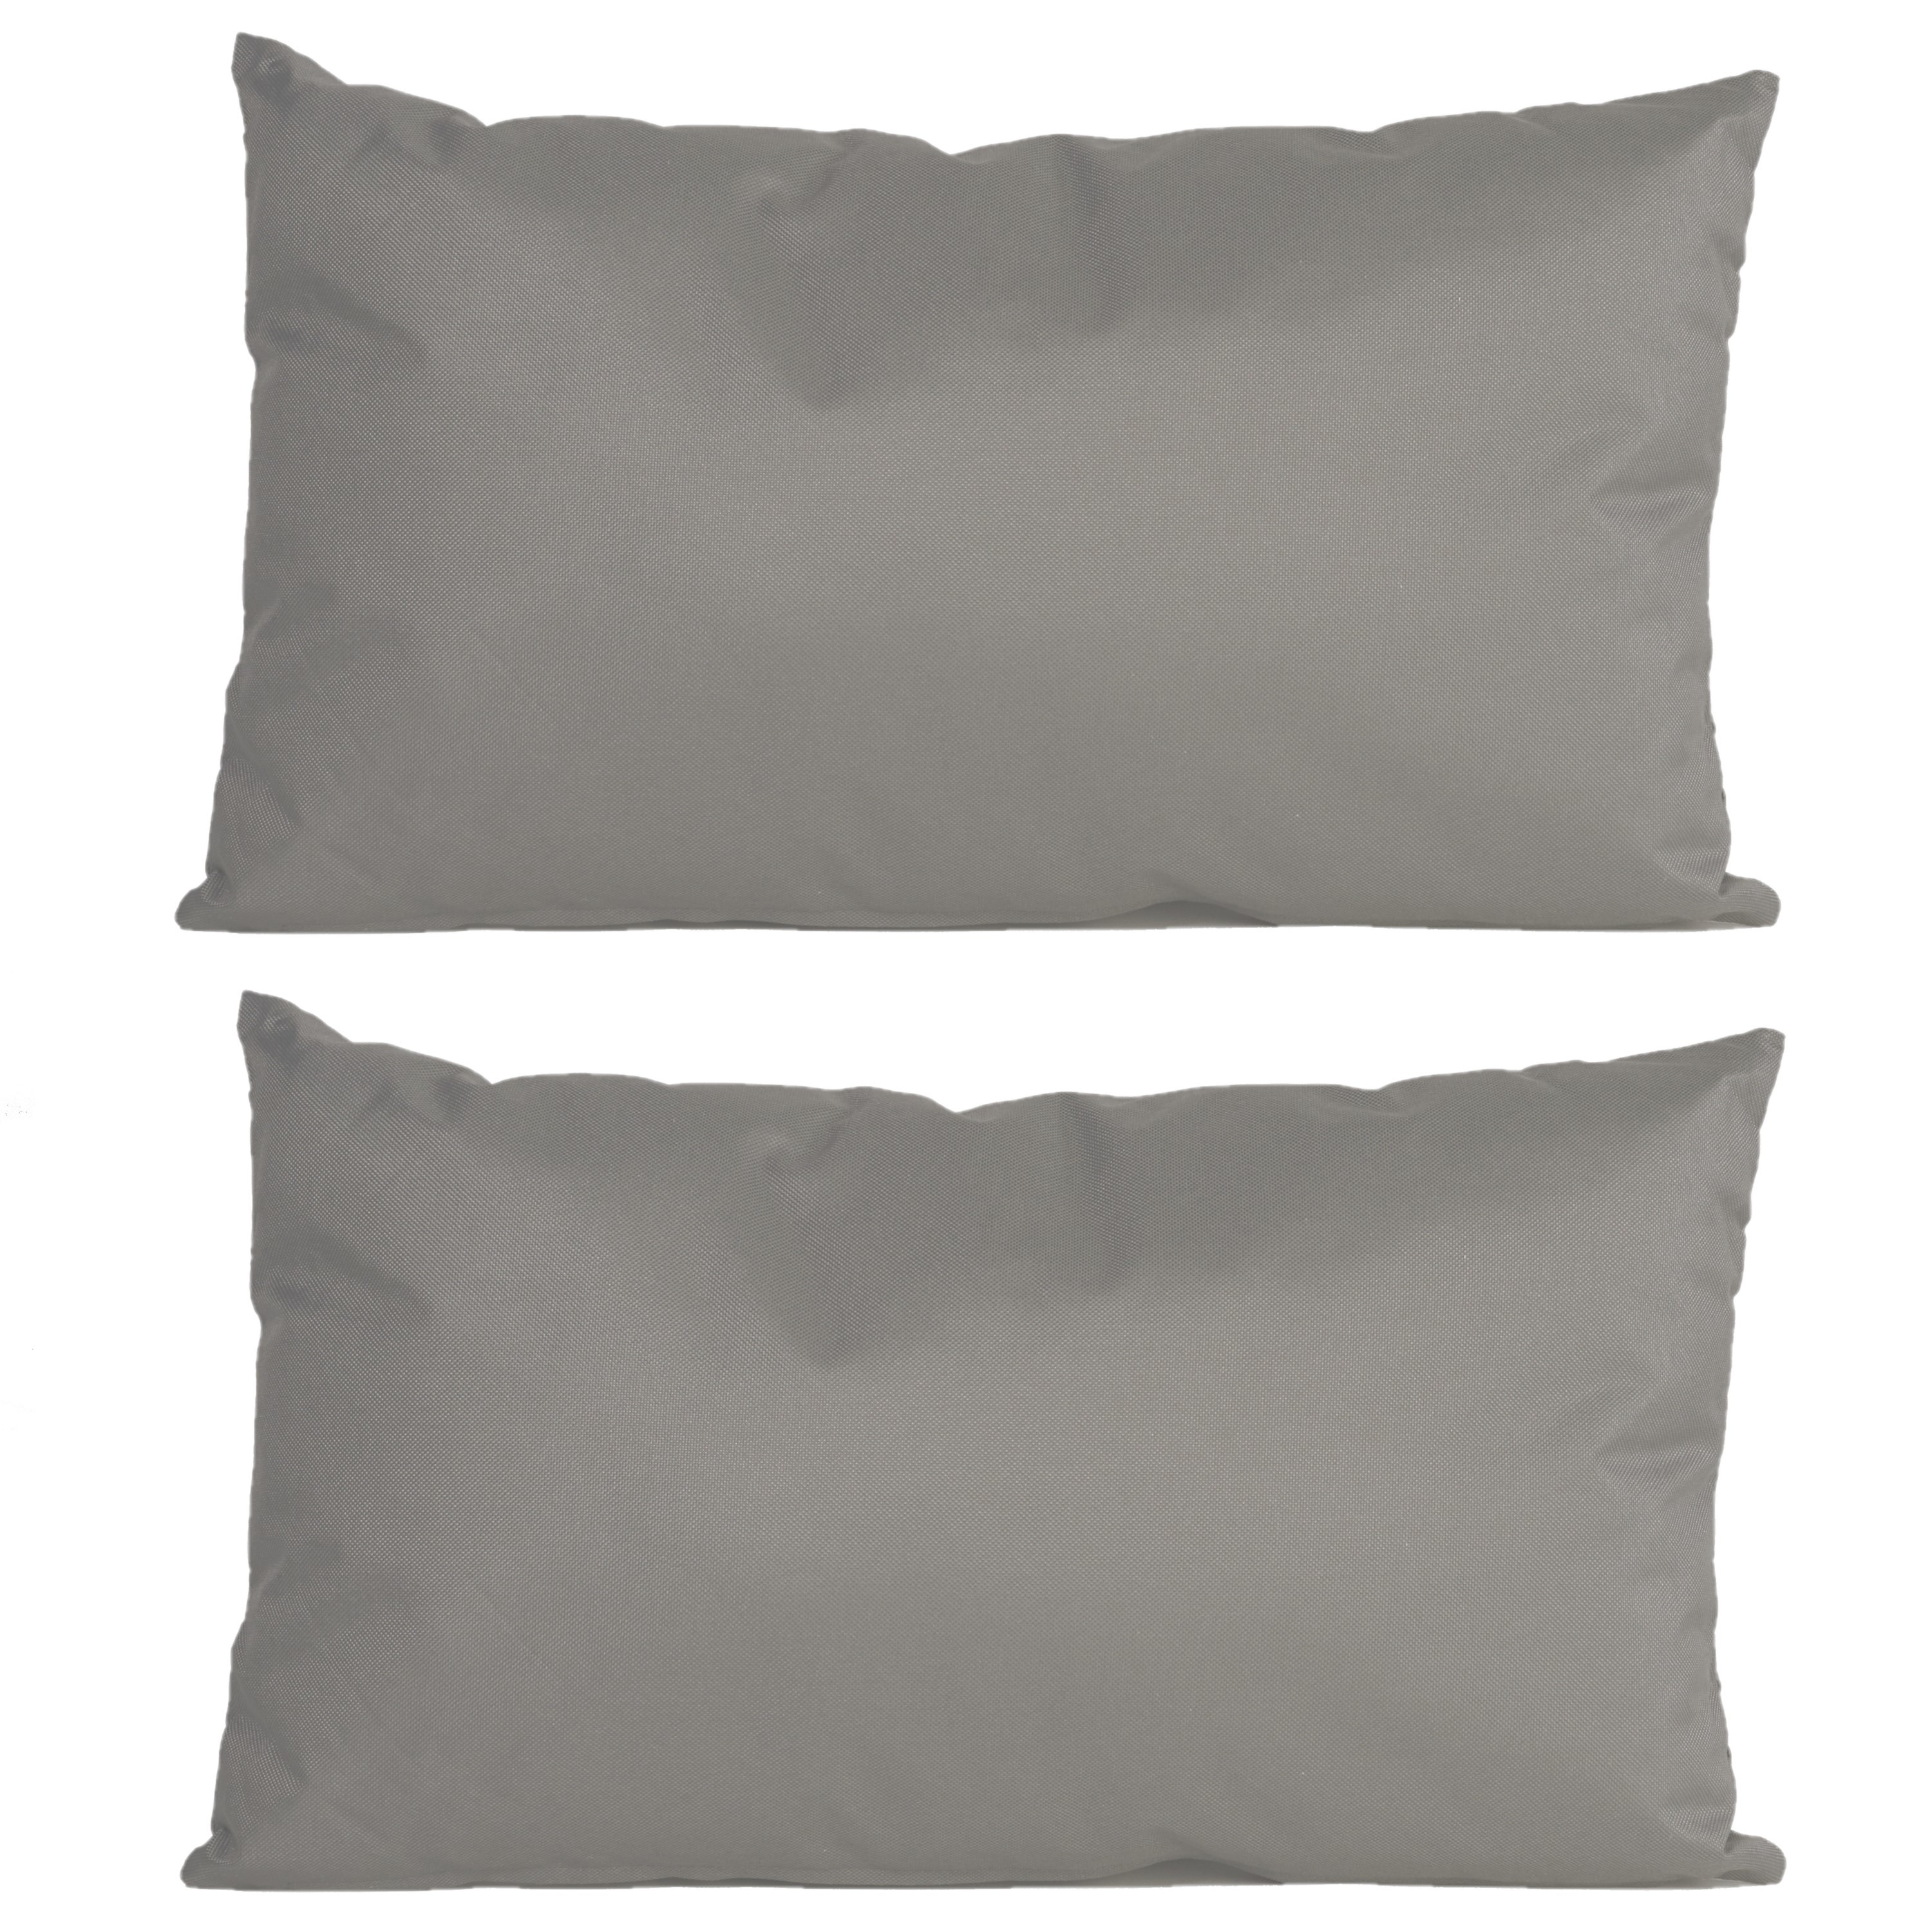 4x stuks bank-sier kussens voor binnen en buiten in de kleur grijs 30 x 50 cm Tuinkussens voor buite